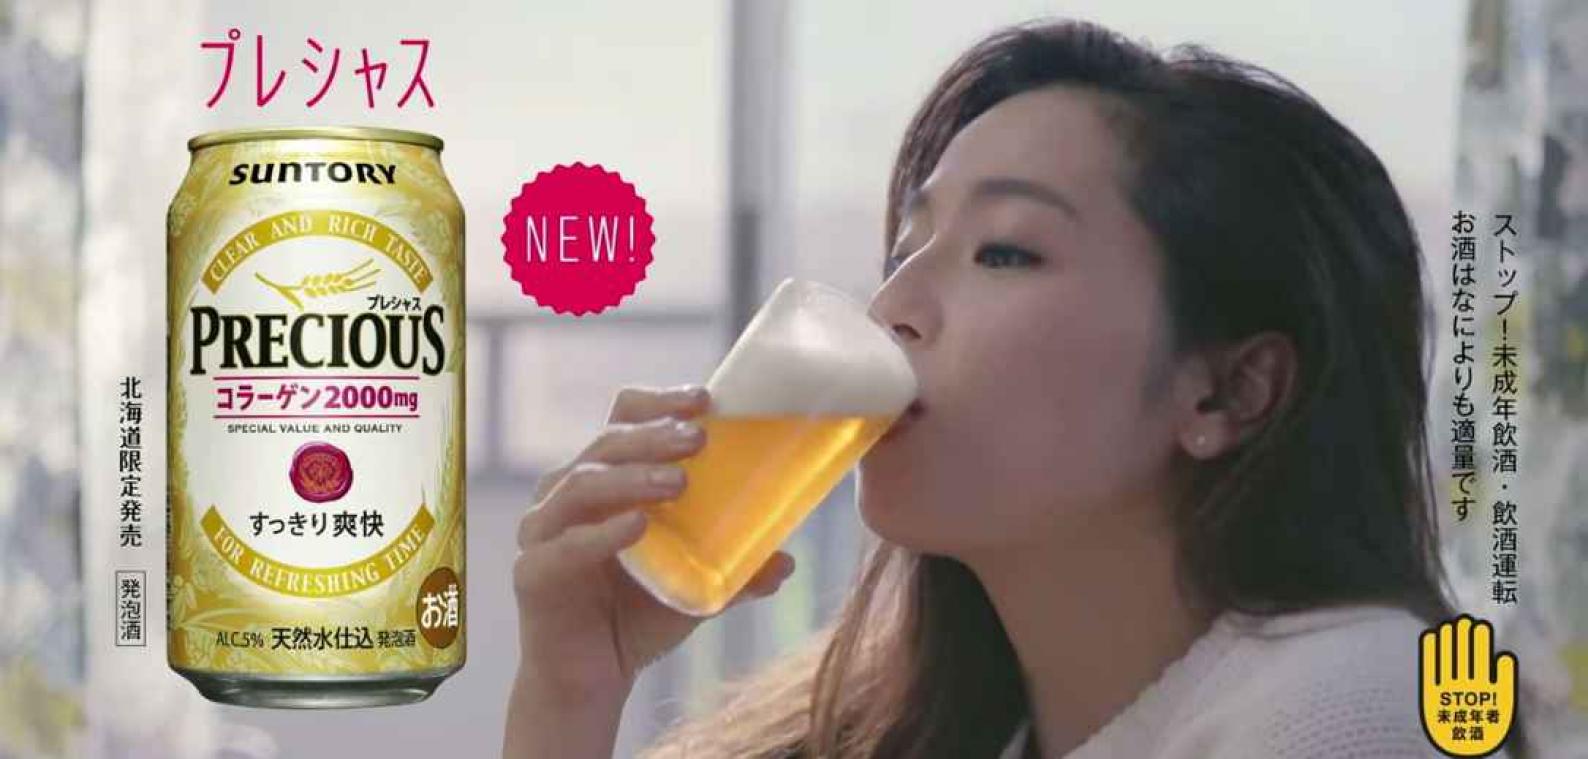 Au Japon, une bière au collagène est censée vous rendre plus beau